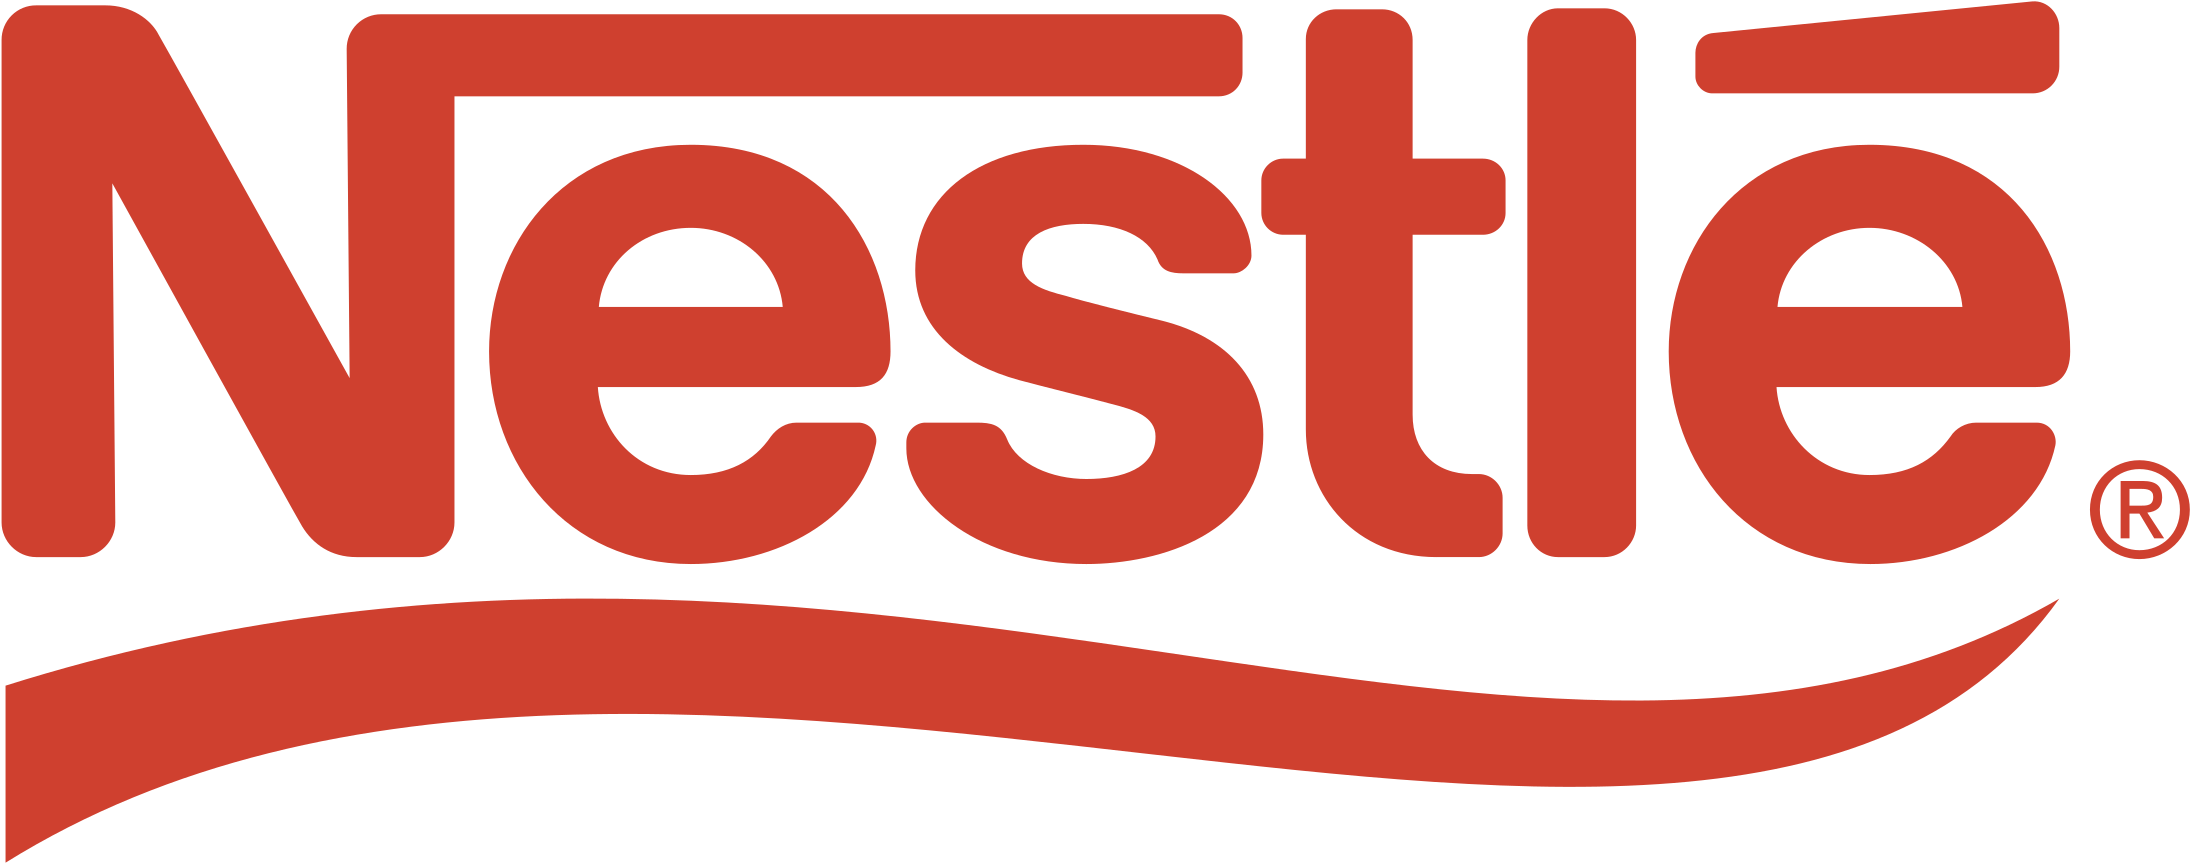 Estle Logo Png Photo - Transp